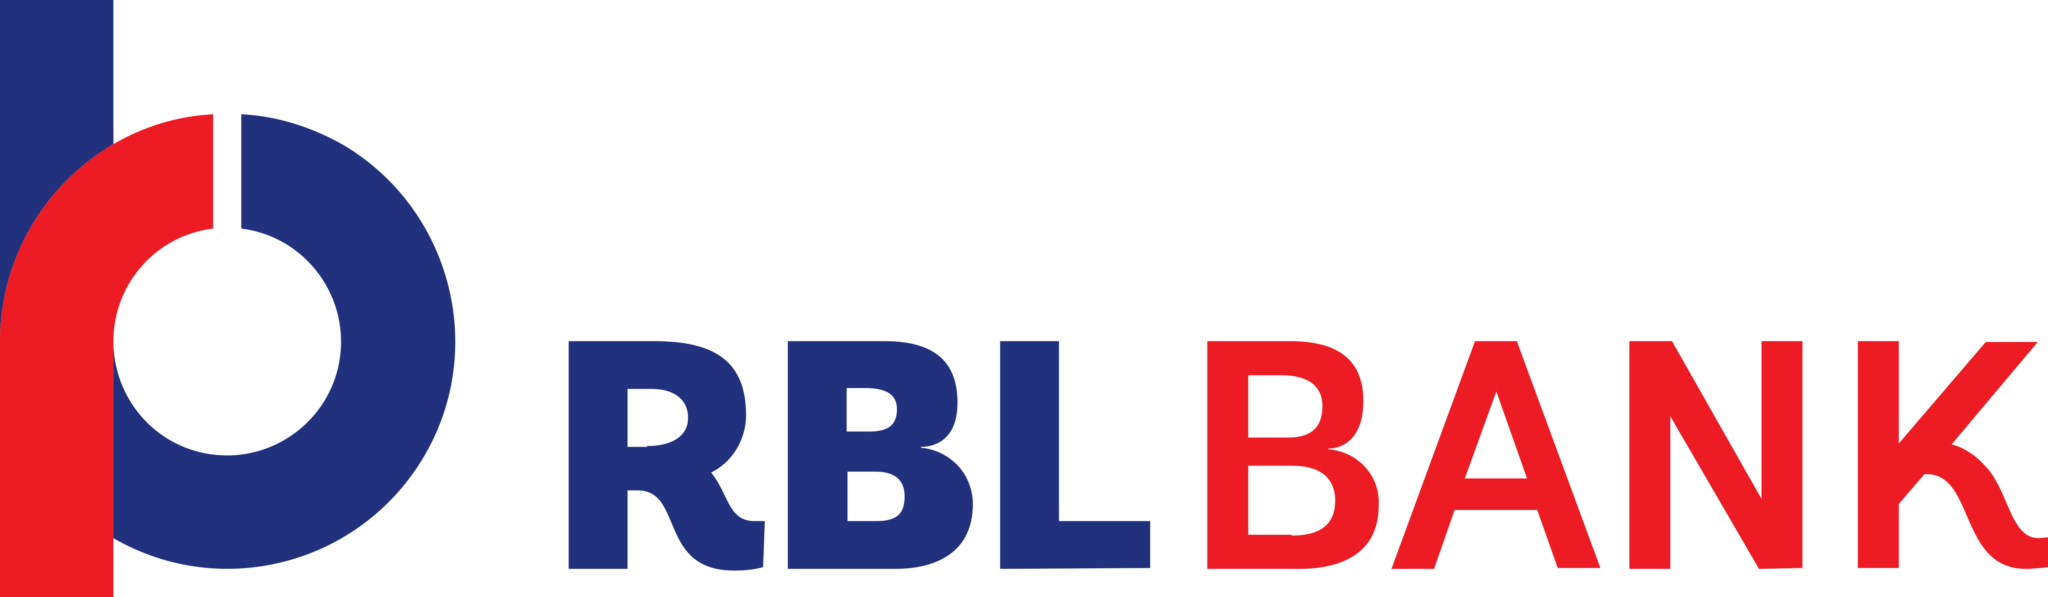 Банки логотипы png